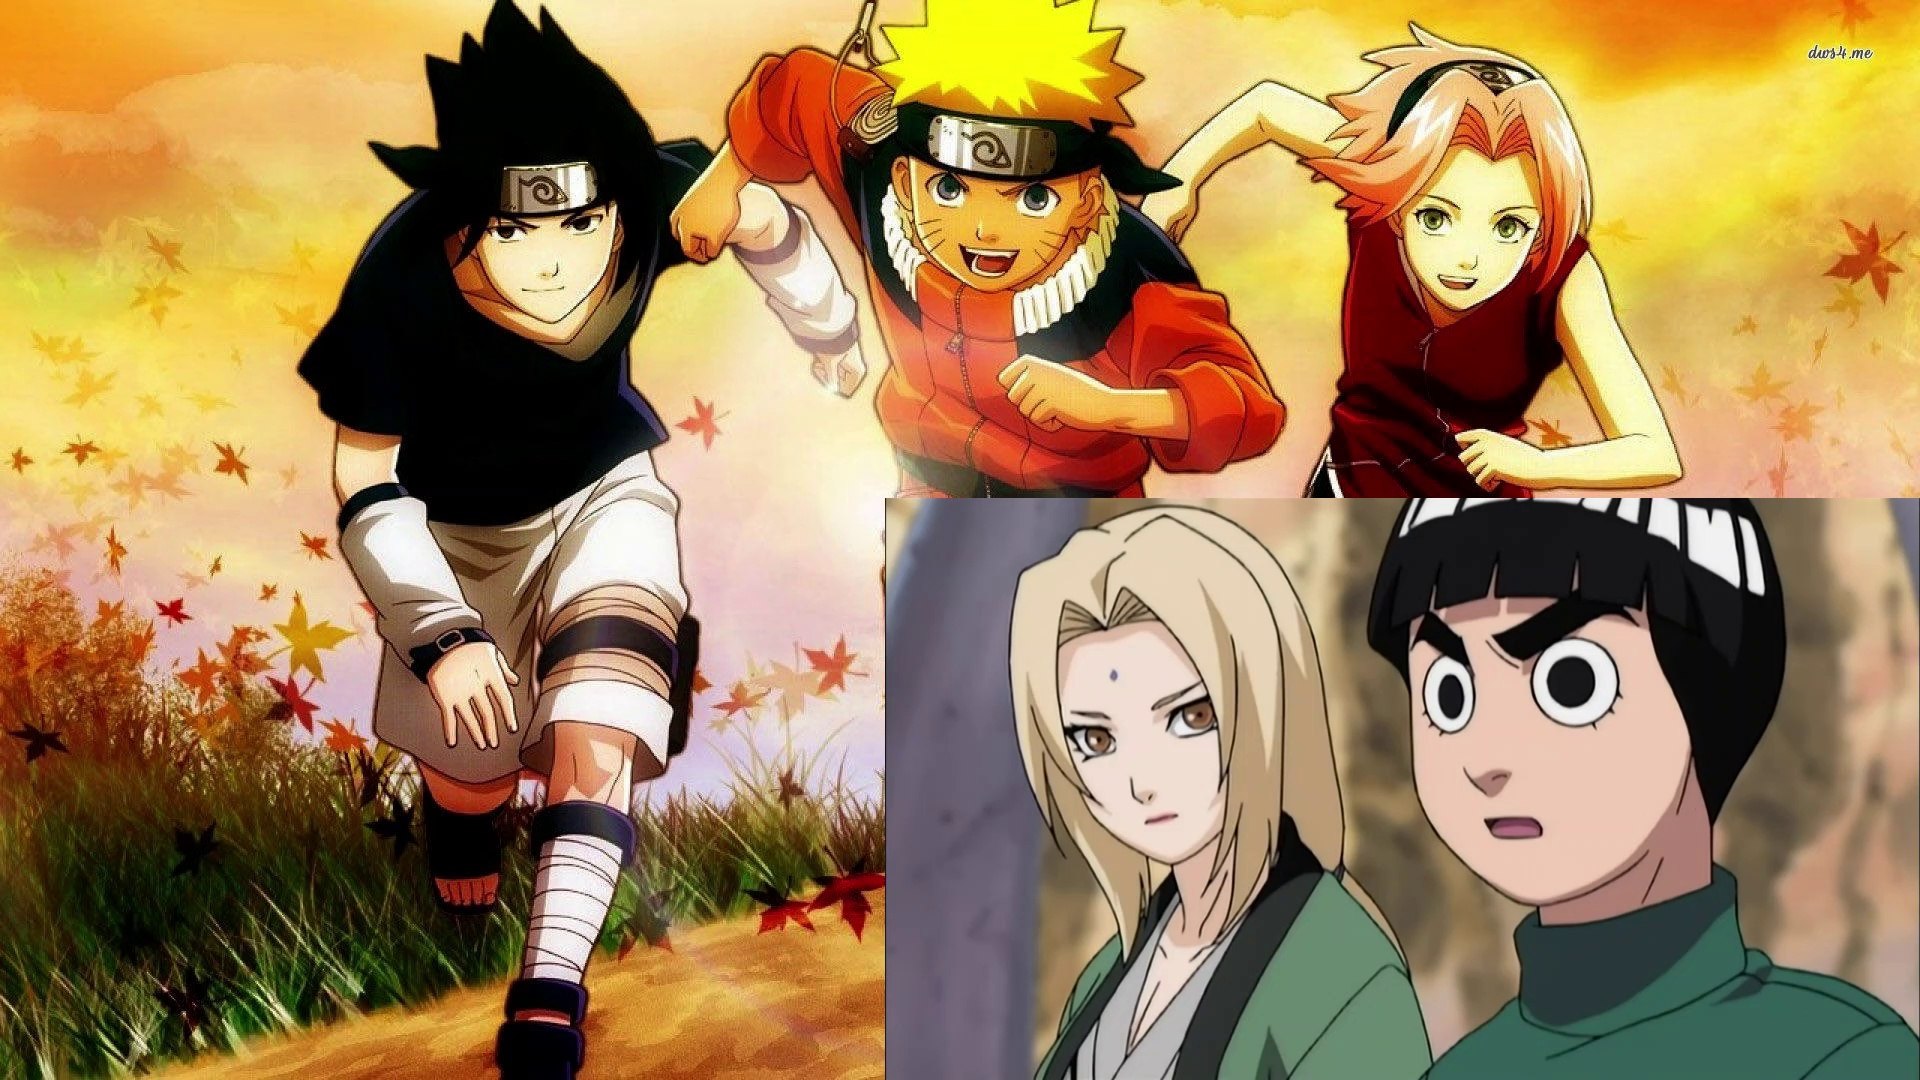 Watch Naruto Season 3, Episode 7: The Battle Begins: Naruto vs